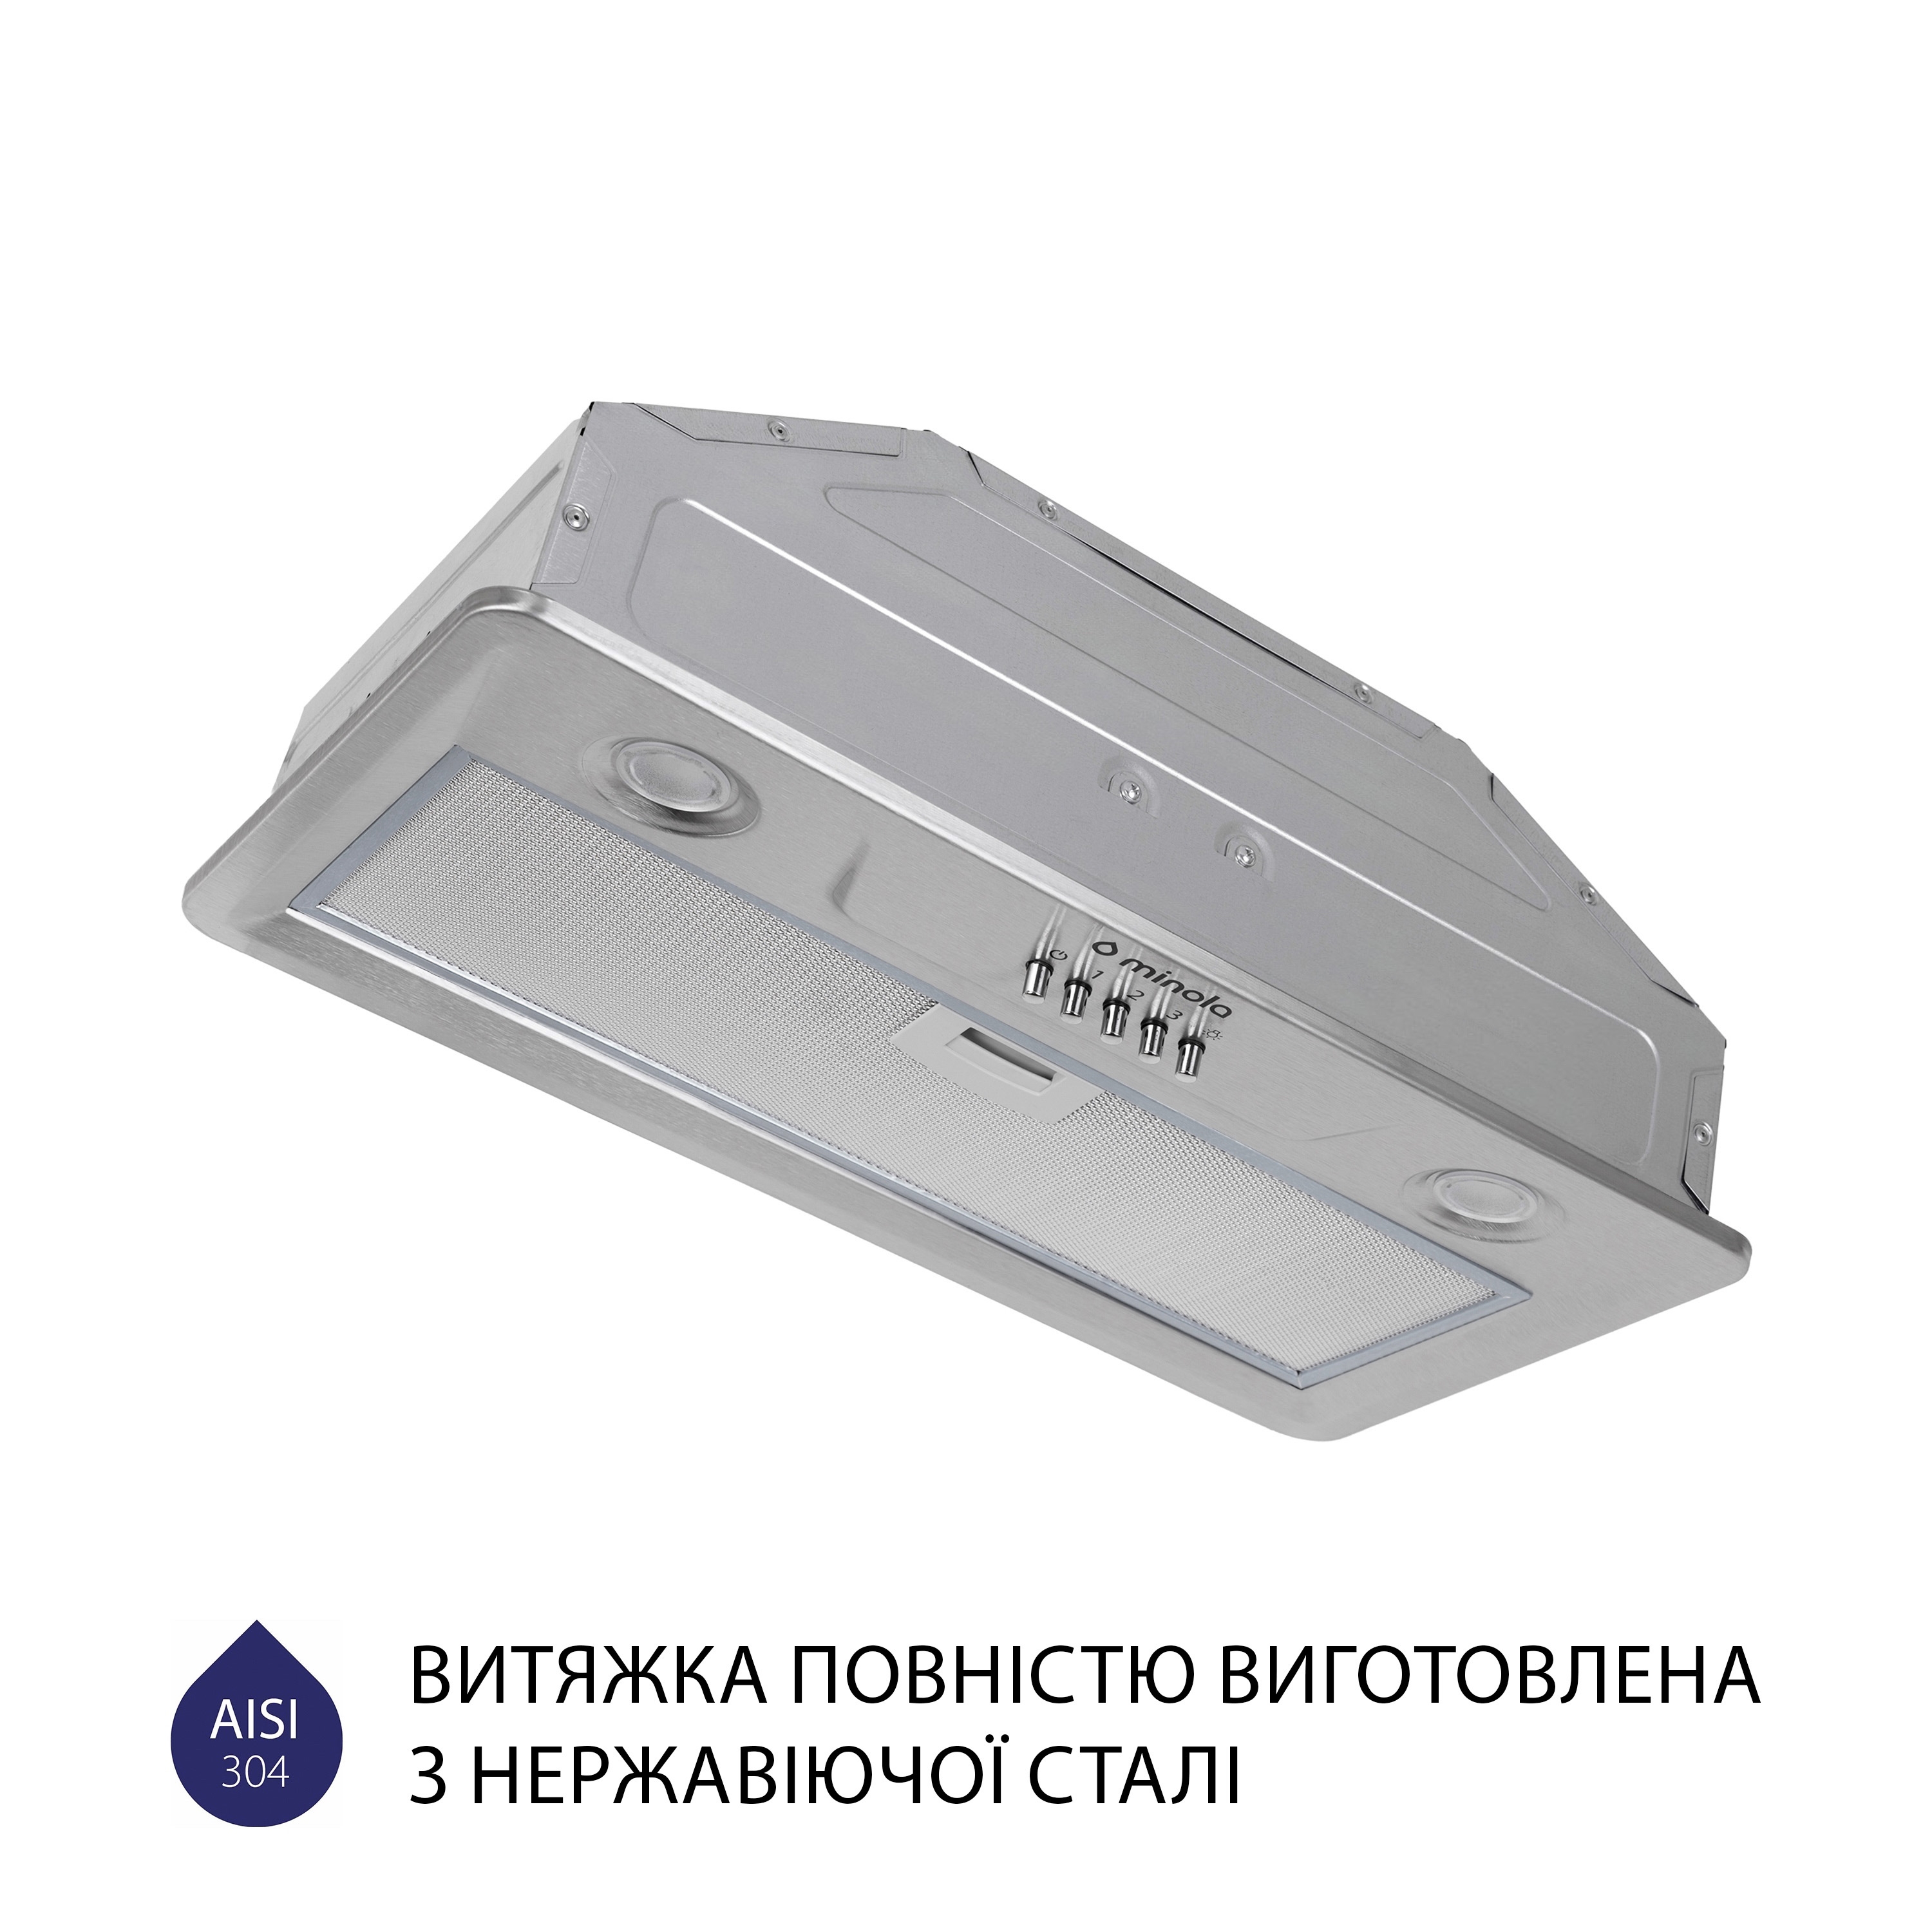 продаём Minola HBI 5202 I 700 LED в Украине - фото 4